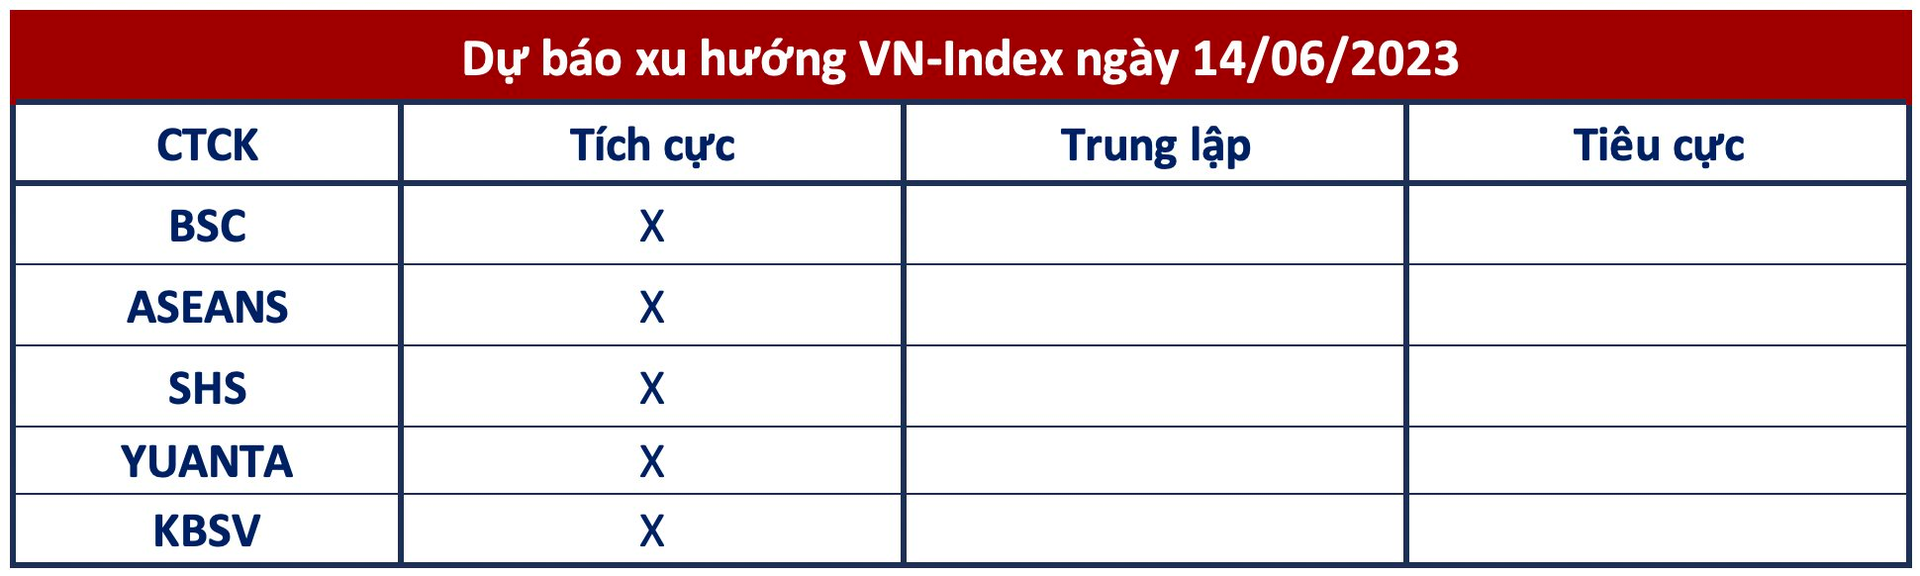 Góc nhìn CTCK: Thị trường chứng khoán tiếp tục quán tính tăng điểm, VN-Index về sát vùng đỉnh ngắn hạn - Ảnh 1.